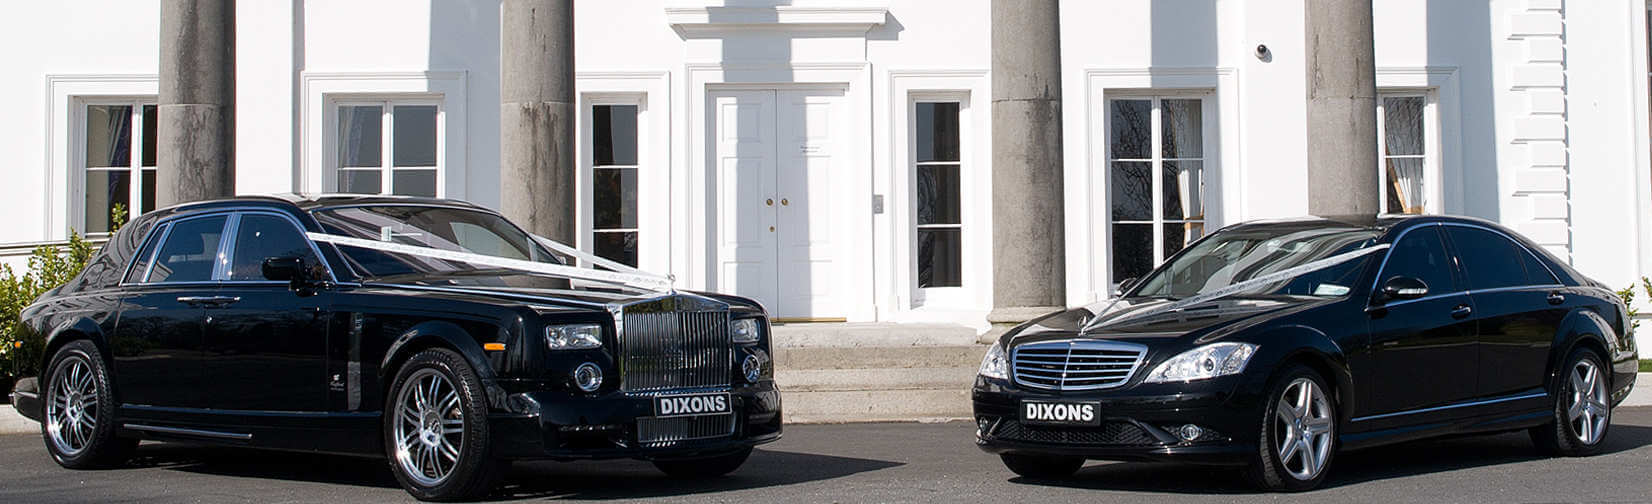 Dixons Wedding Limousines Mercedes Rolls Royce Bentley